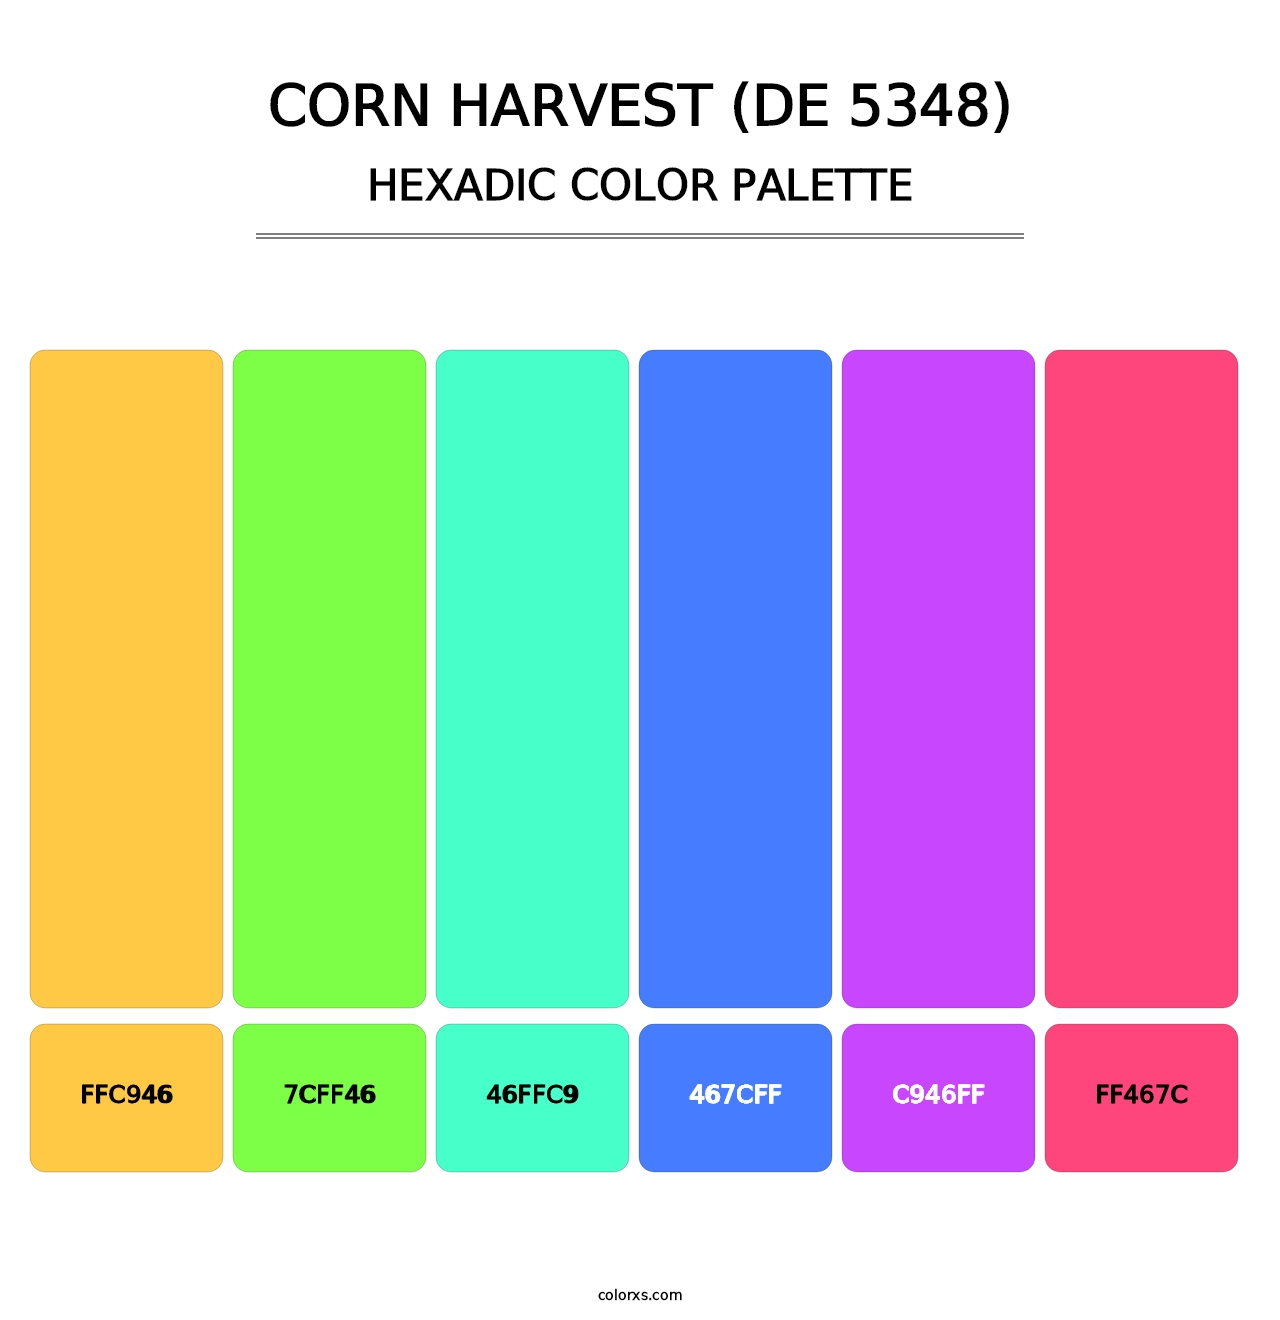 Corn Harvest (DE 5348) - Hexadic Color Palette